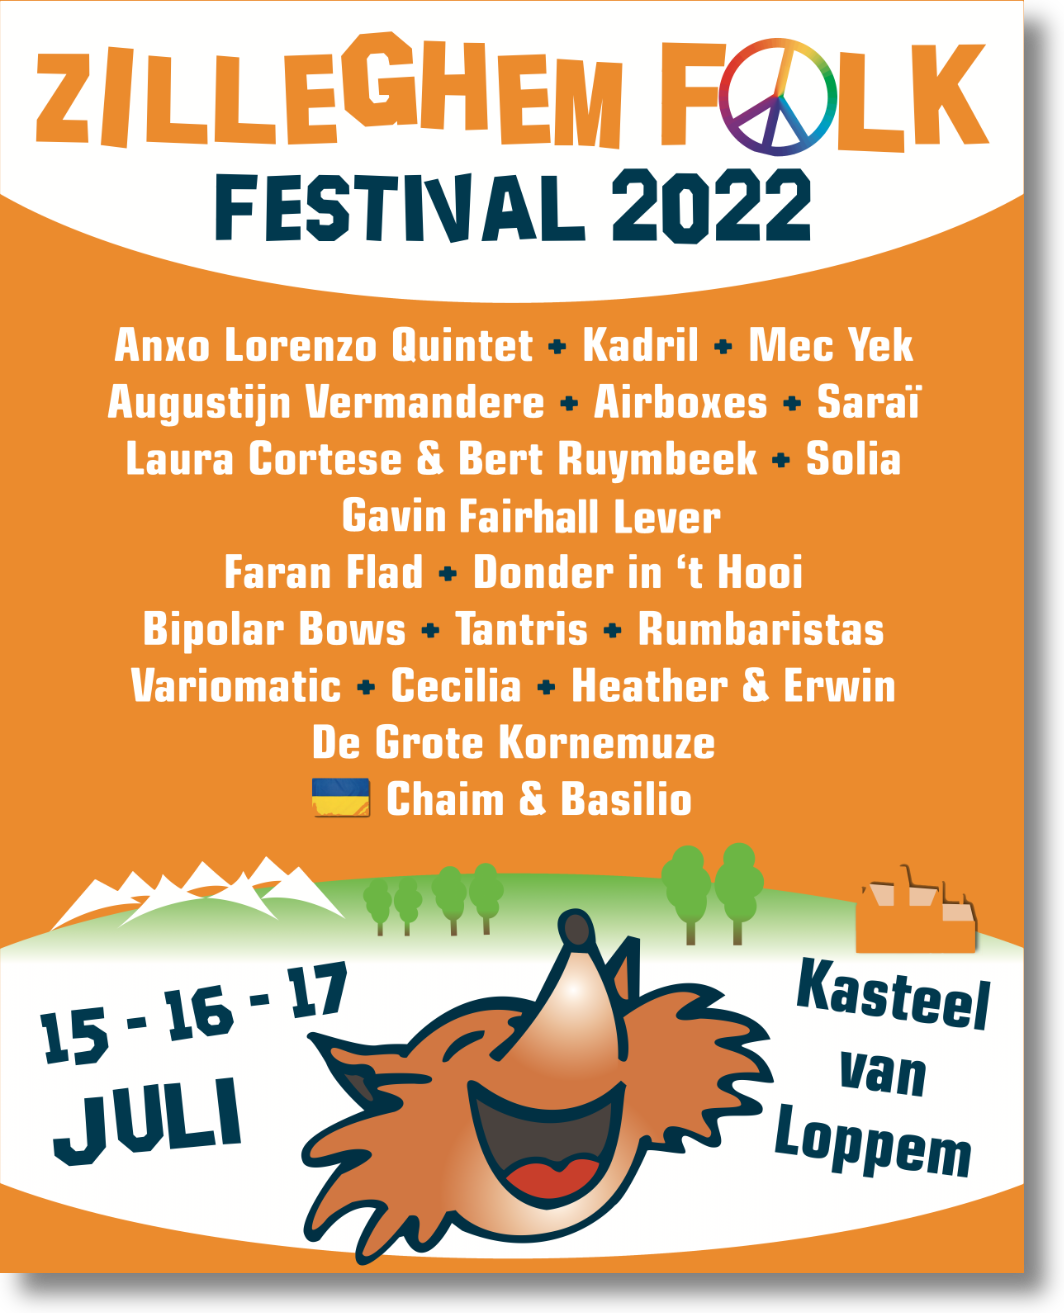 Affiche van de elfe editie van Zilleghem Folk 2022